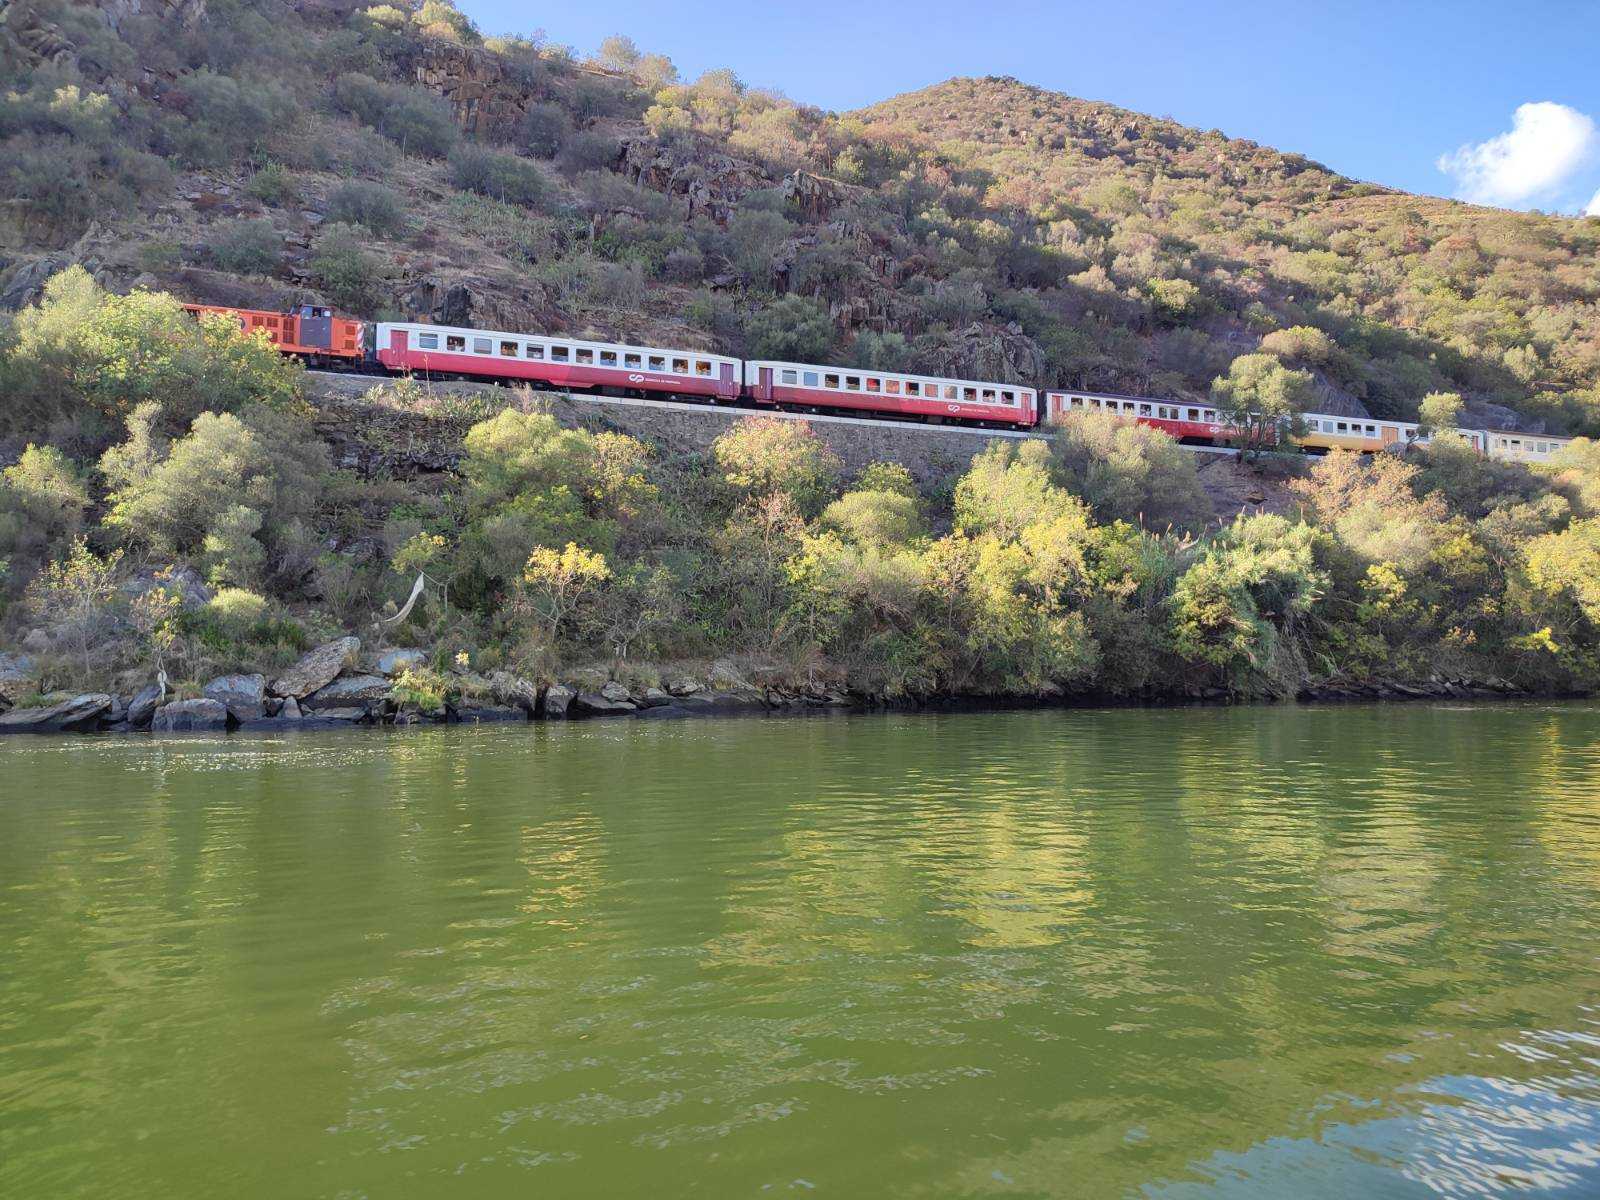 Train ride - Douro river